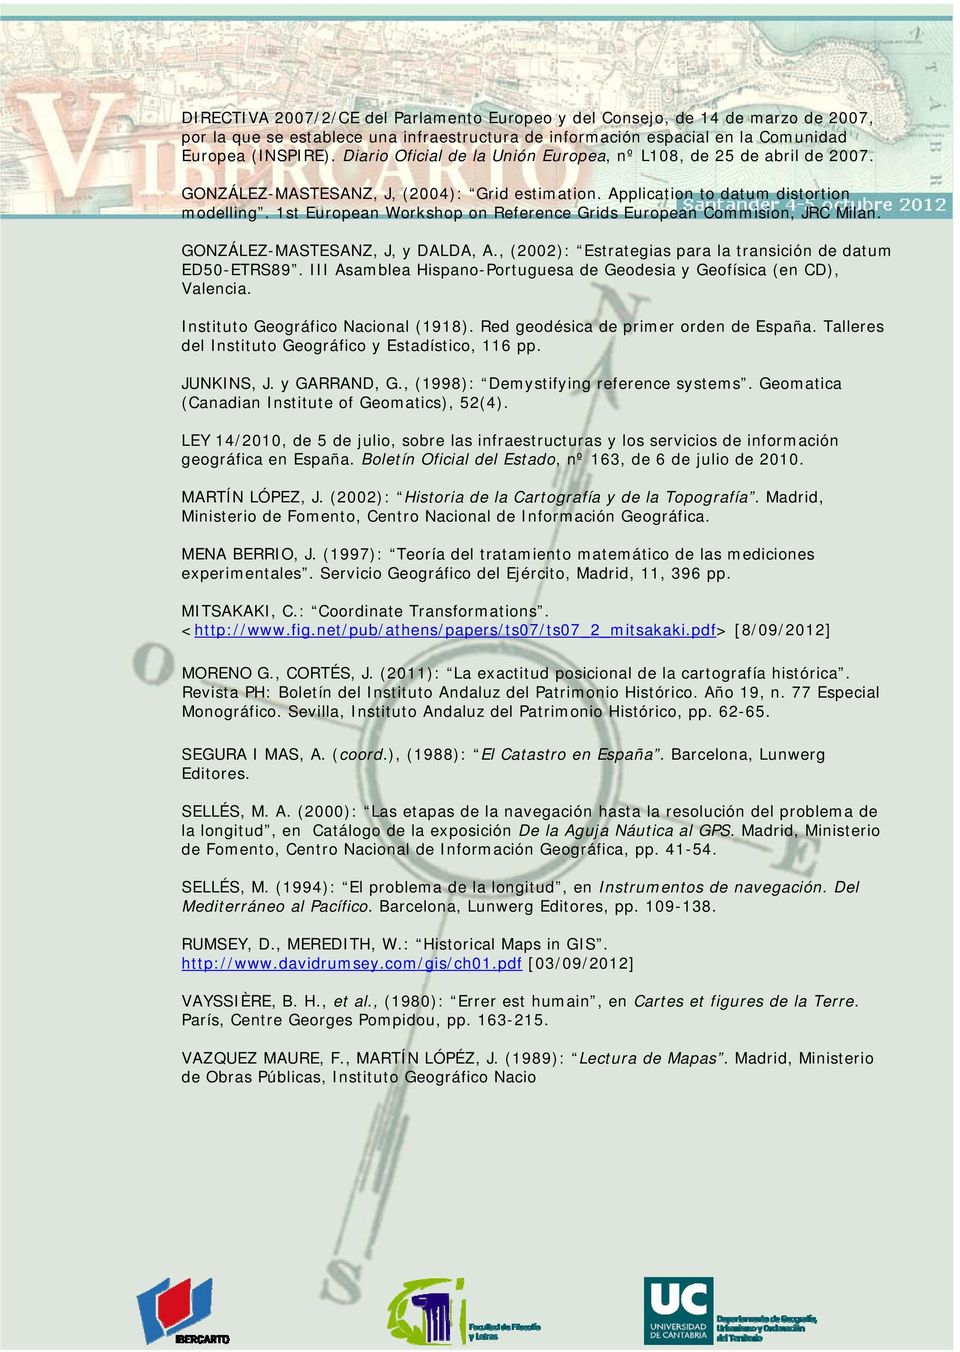 1st European Workshop on Reference Grids European Commision, JRC Milan. GONZÁLEZ-MASTESANZ, J, y DALDA, A., (2002): Estrategias para la transición de datum ED50-ETRS89.